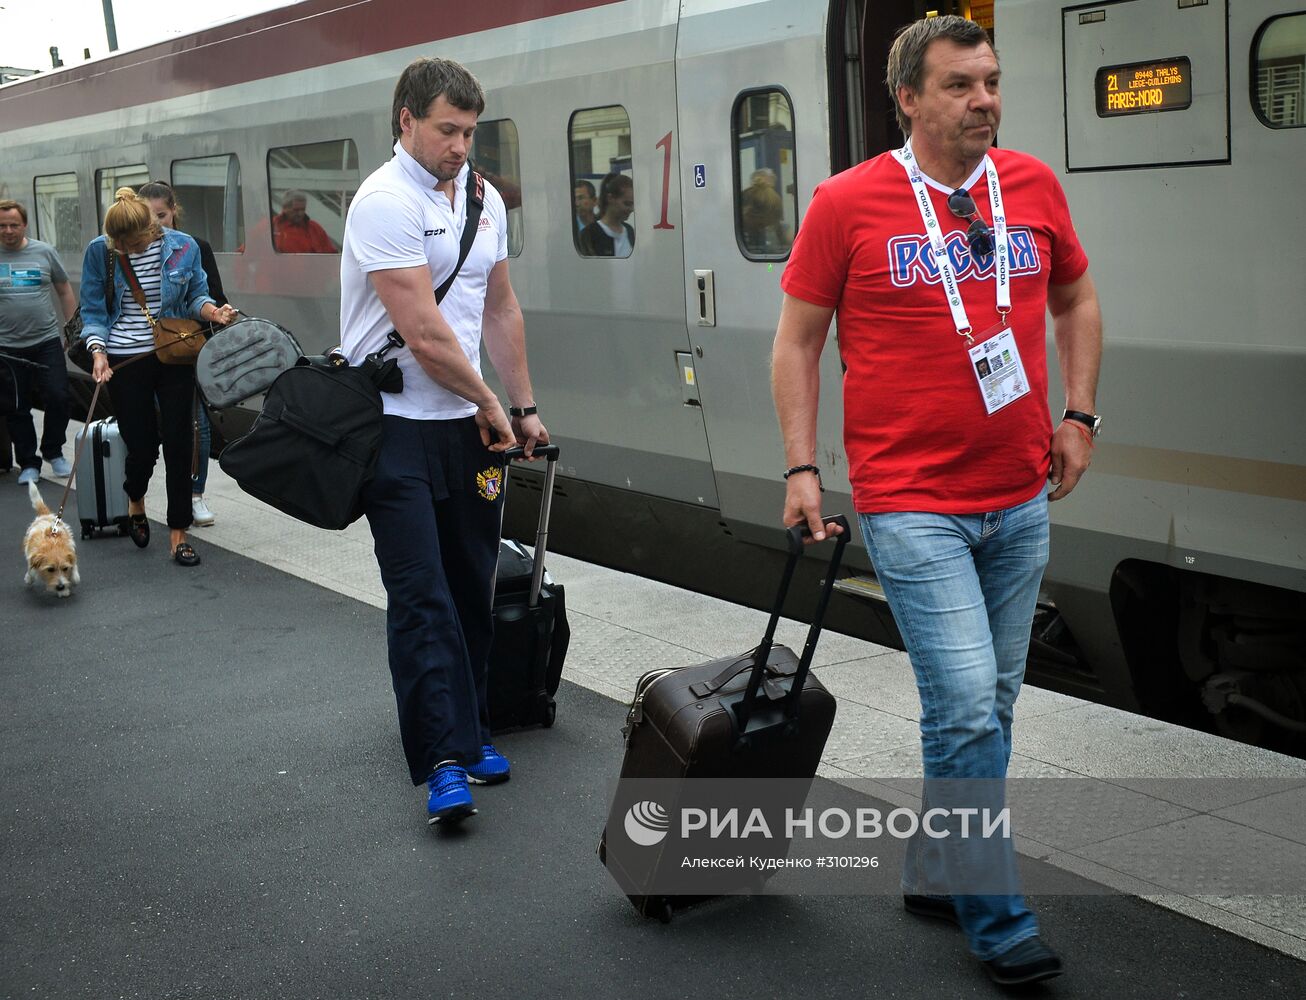 Сборная России по хоккею прибыла в Париж